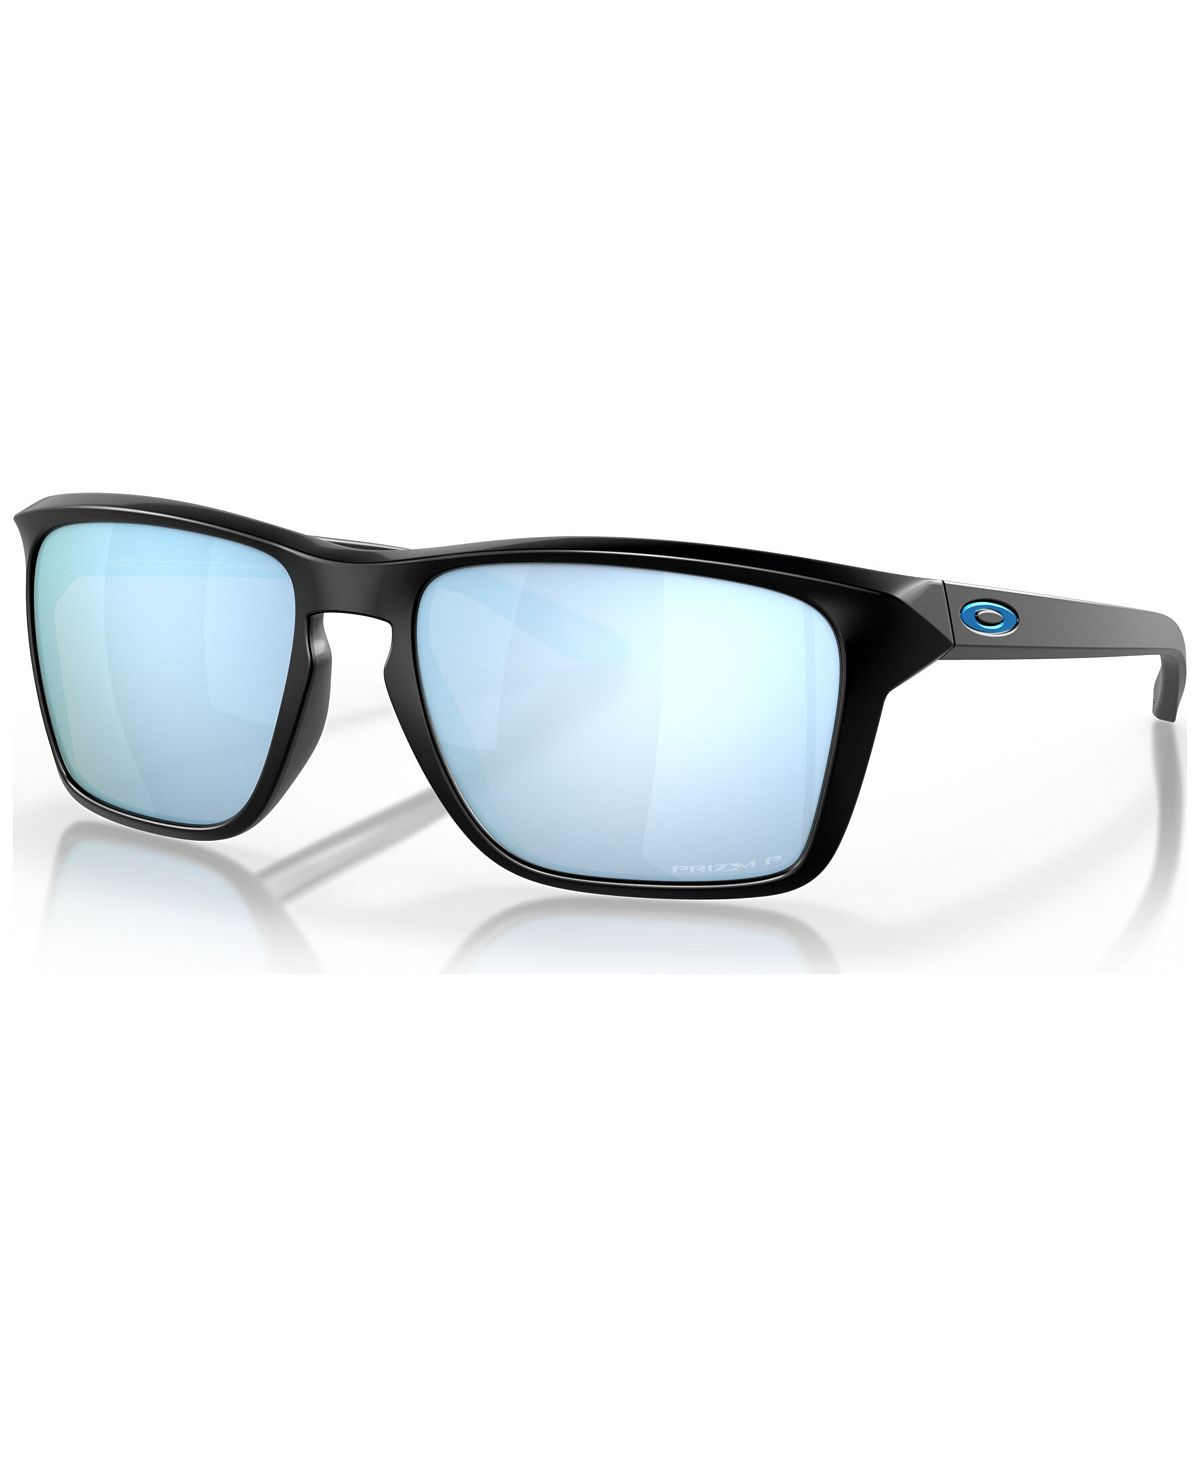 Мужские поляризованные солнцезащитные очки, OO9448-2760 Oakley